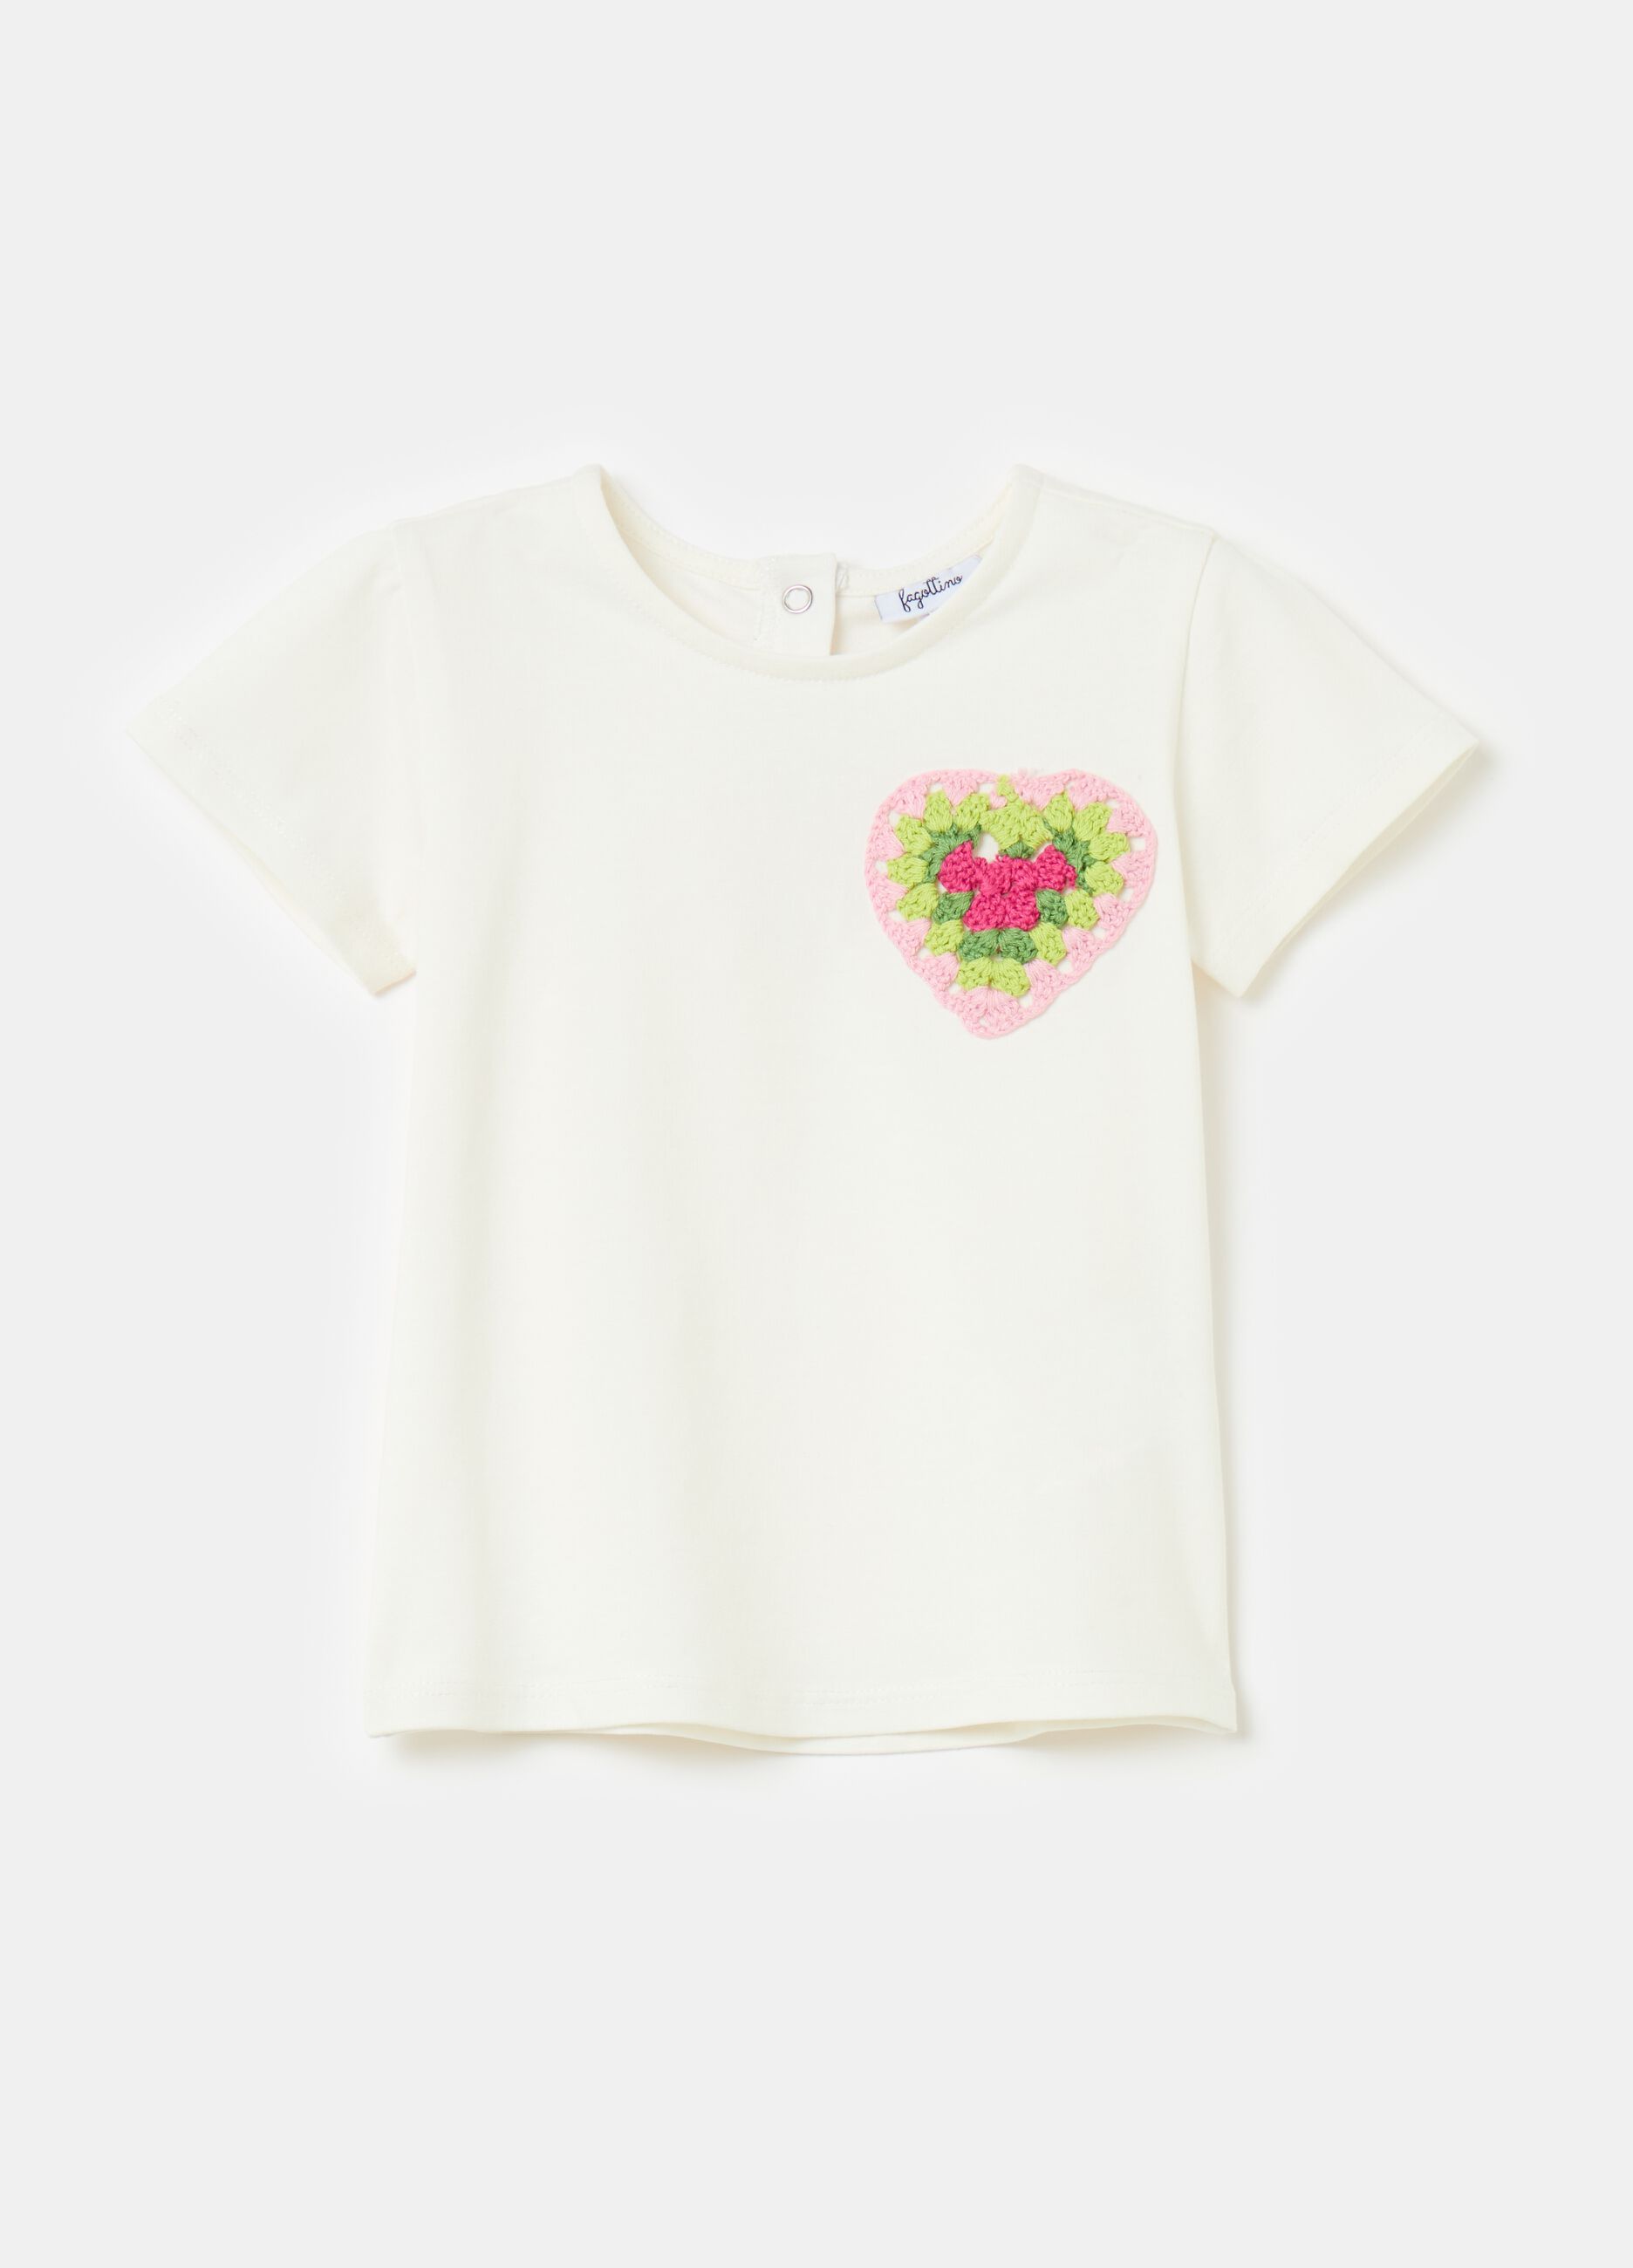 T-shirt con applicazione cuore crochet